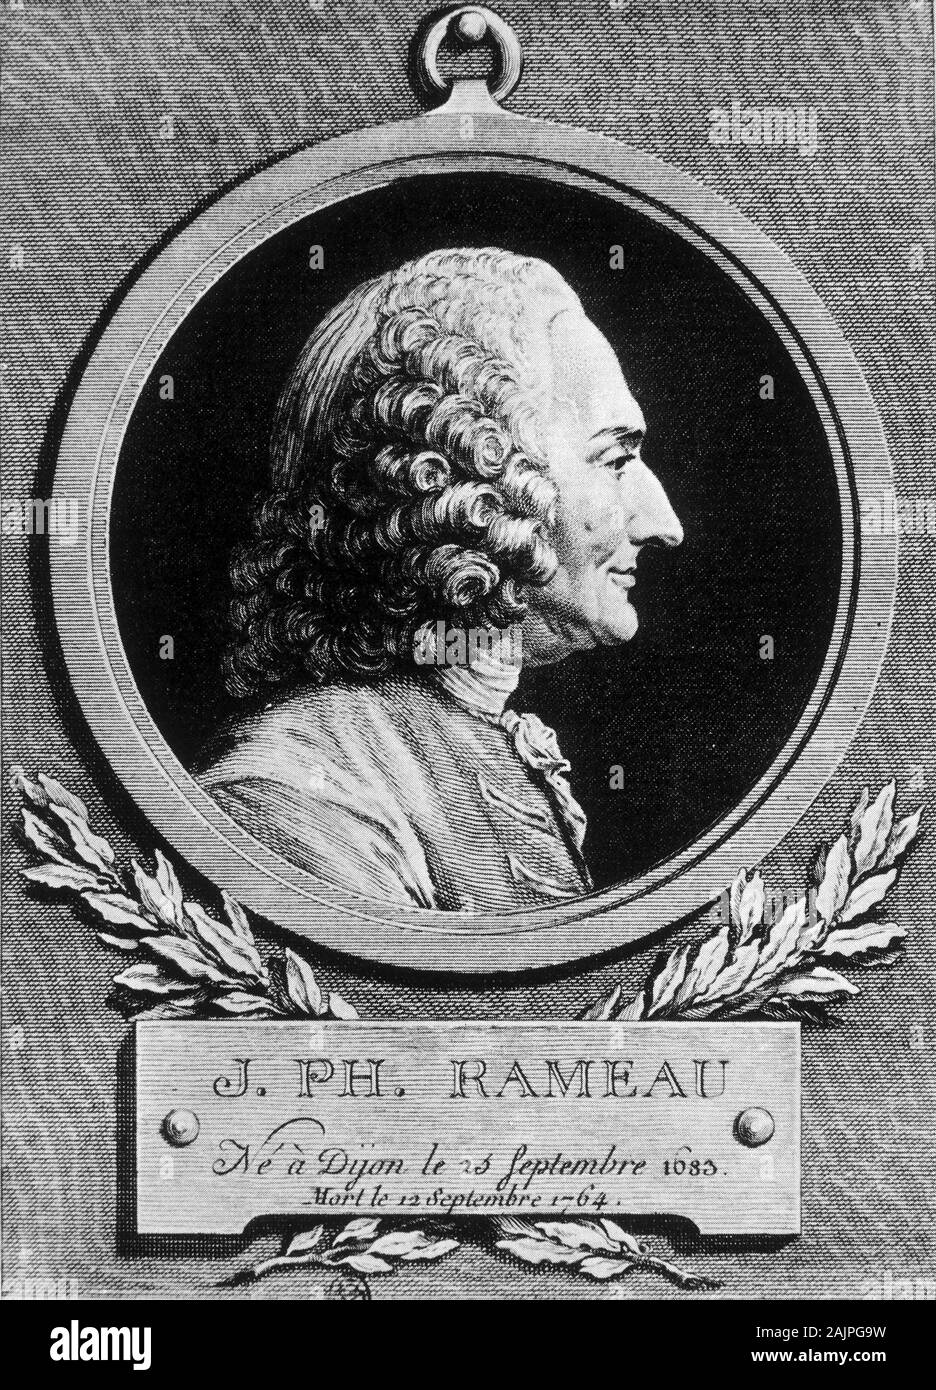 Portrait de Jean Philippe (Jean-Philippe) Rameau, compositeur francais (1683-1764) - rotocalco, XVIIIeme siecle Foto Stock